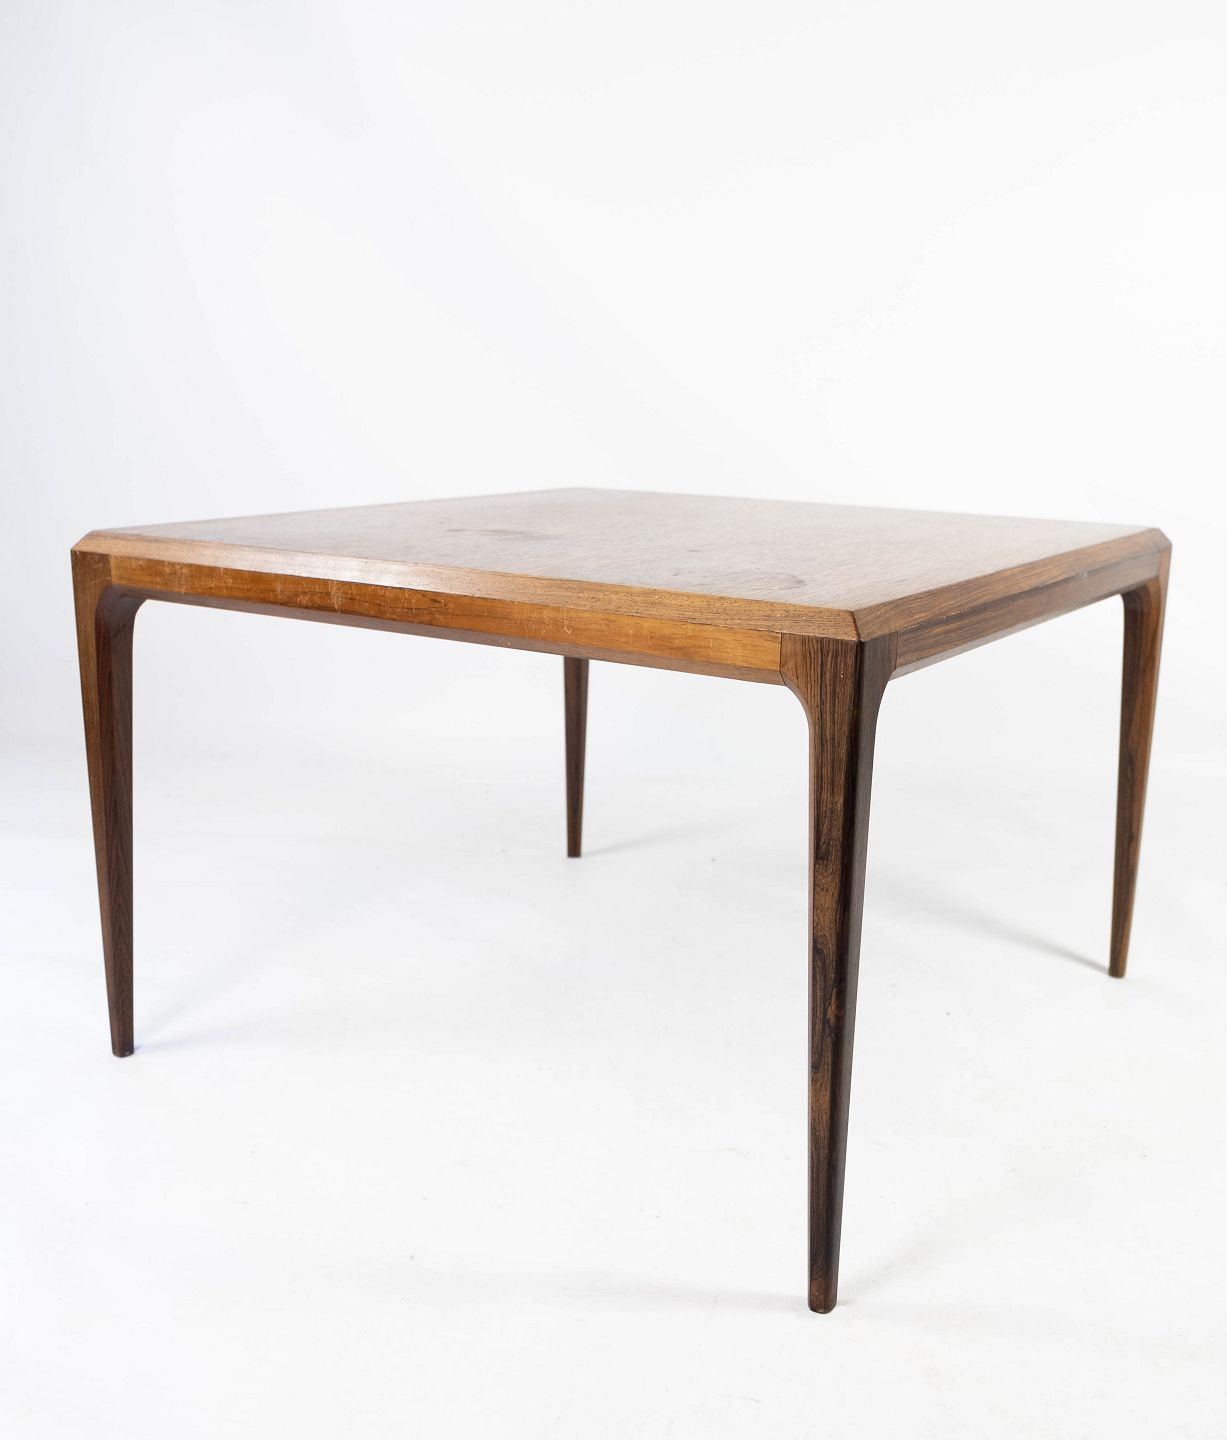 Sofabord i palisander designet Johannes Andersen og fremstillet af Silkeborg Osted & Design